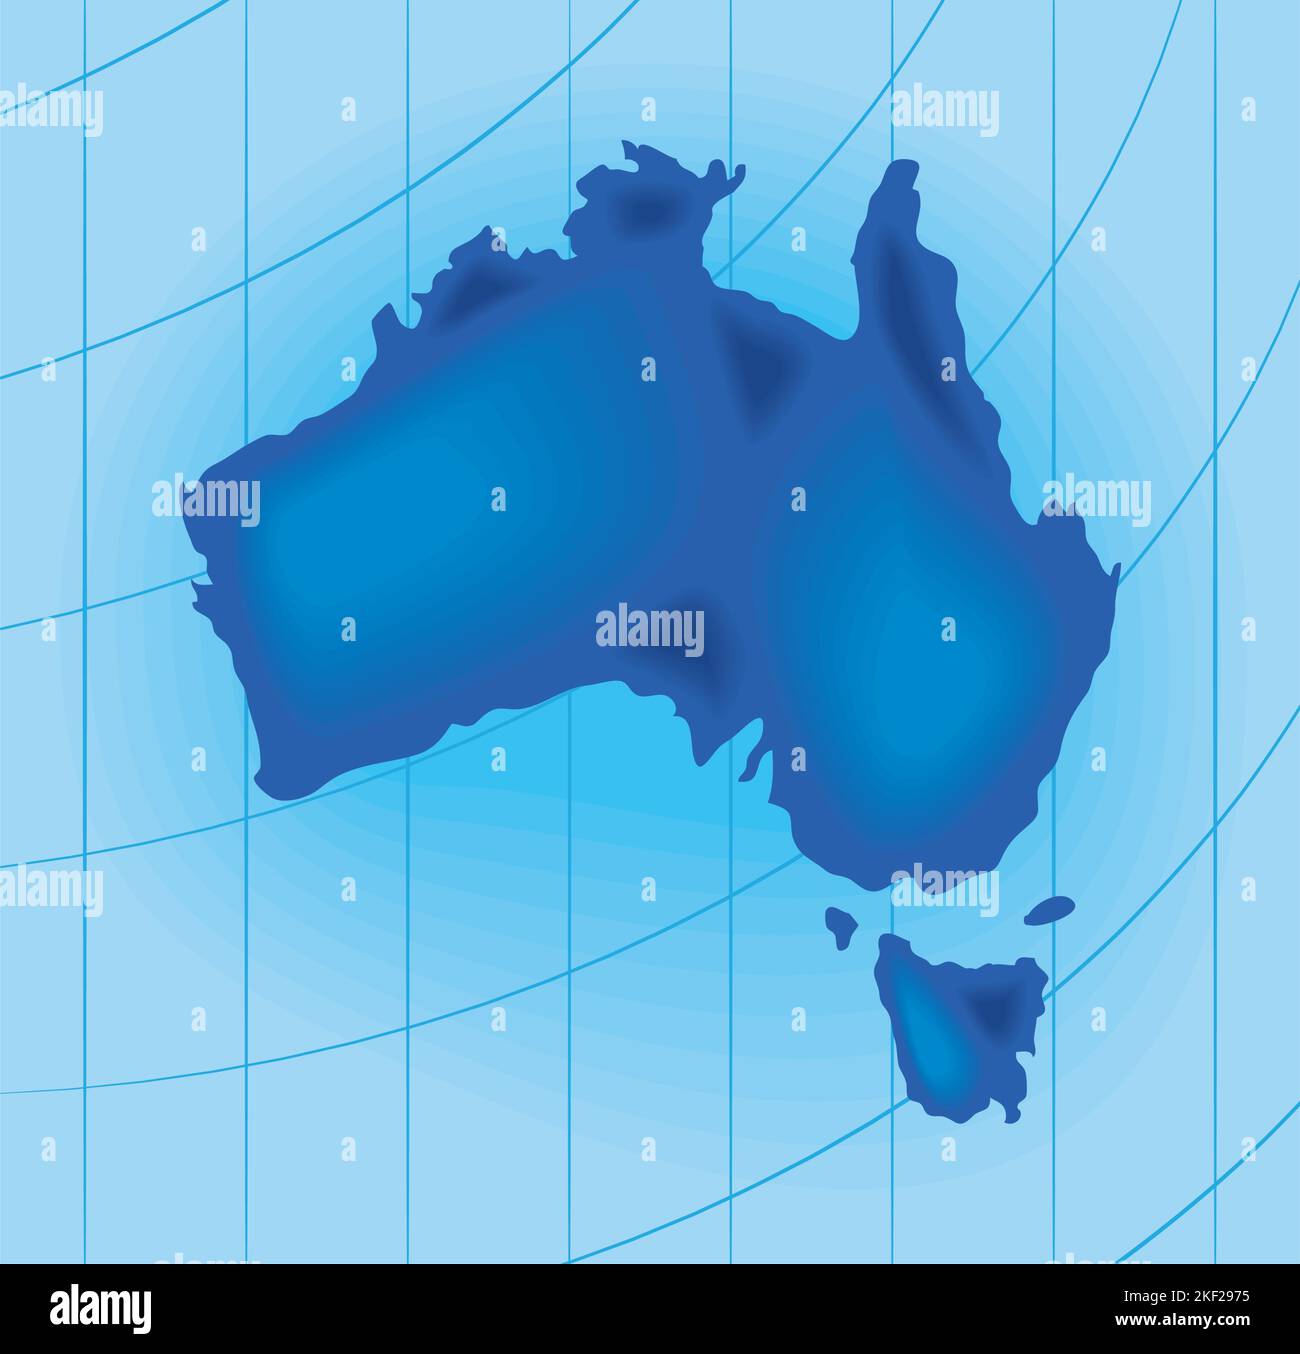 Carte de l'Australie Illustration de Vecteur